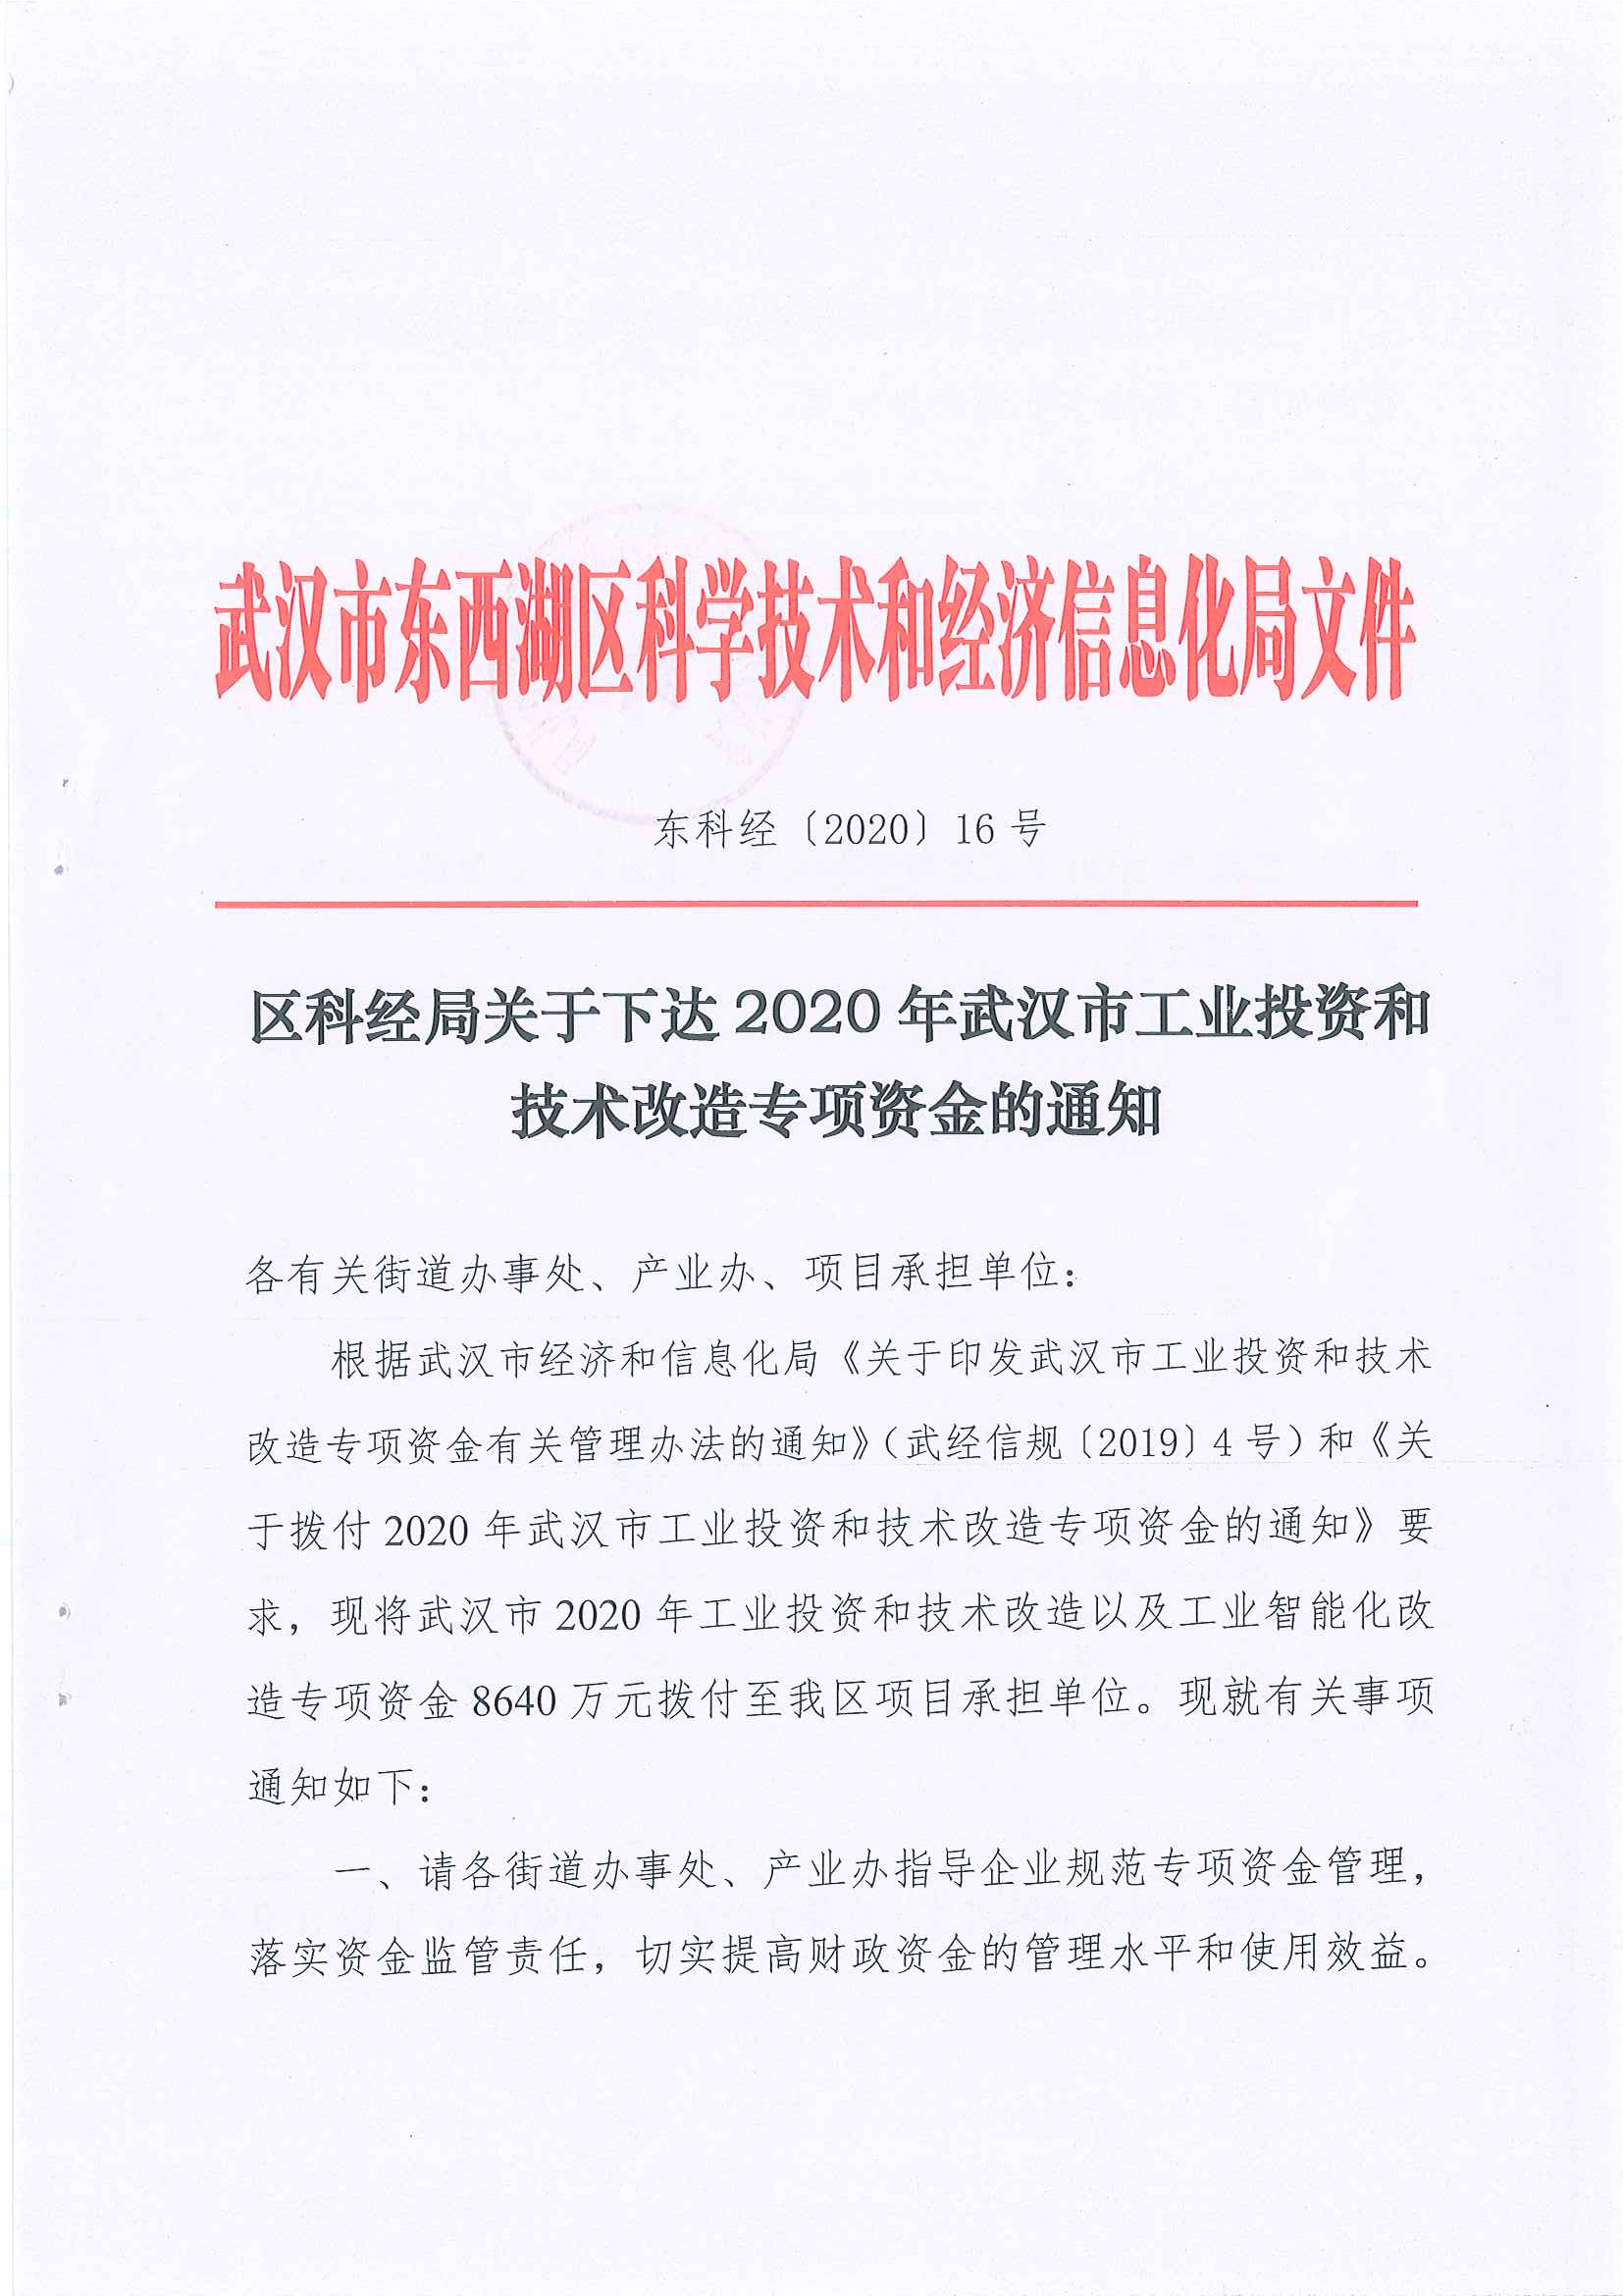 武汉市东西湖区科学技术和经济信息化局文件